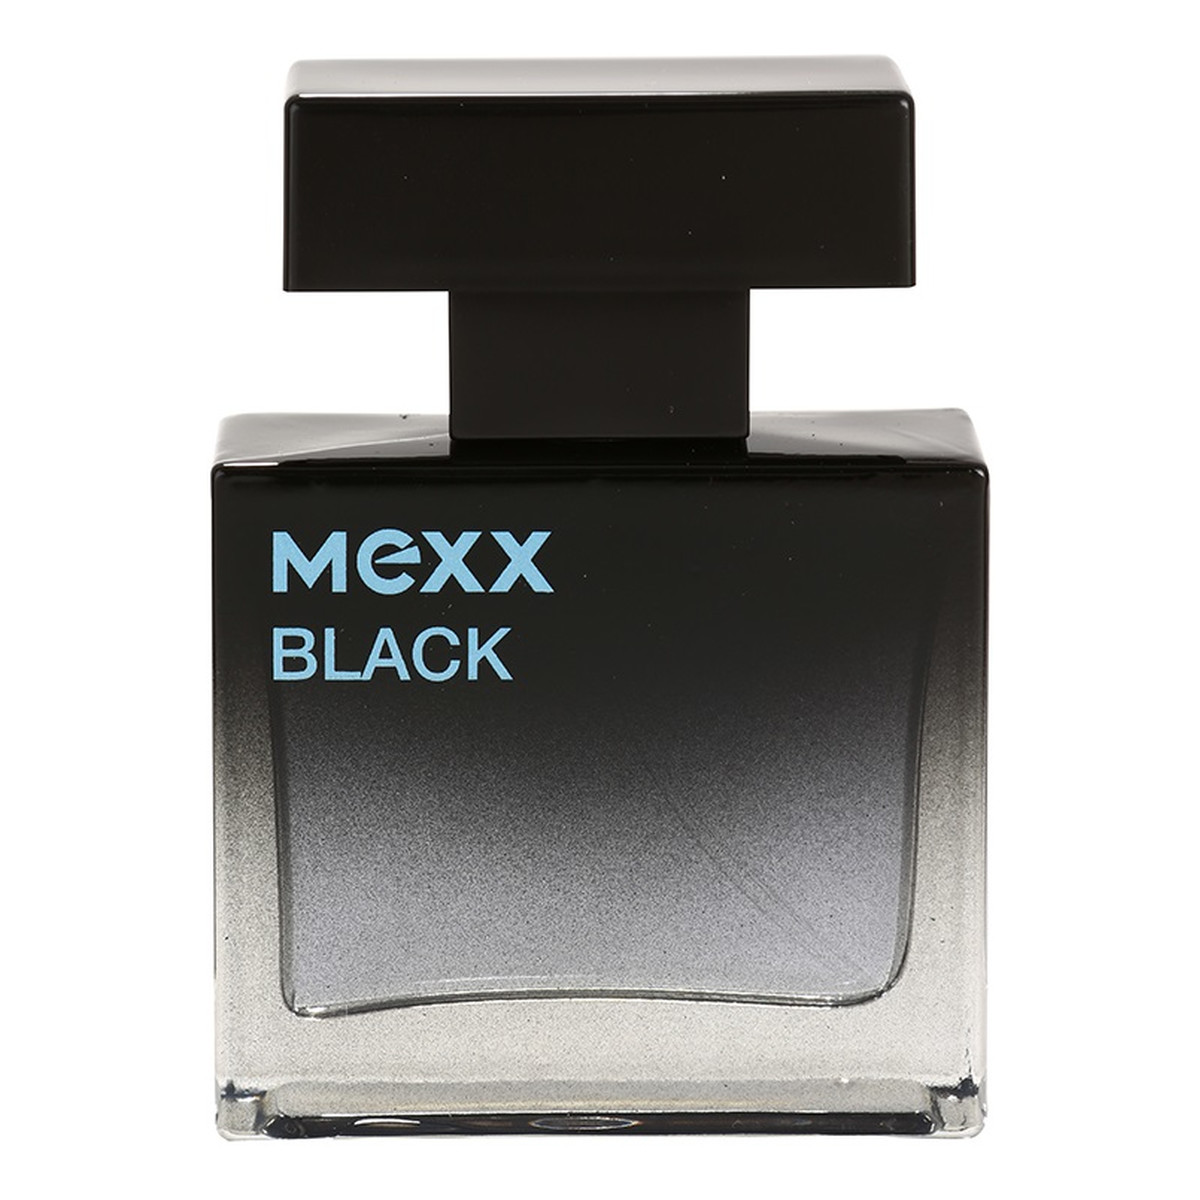 Mexx Black Man woda toaletowa dla mężczyzn 30ml